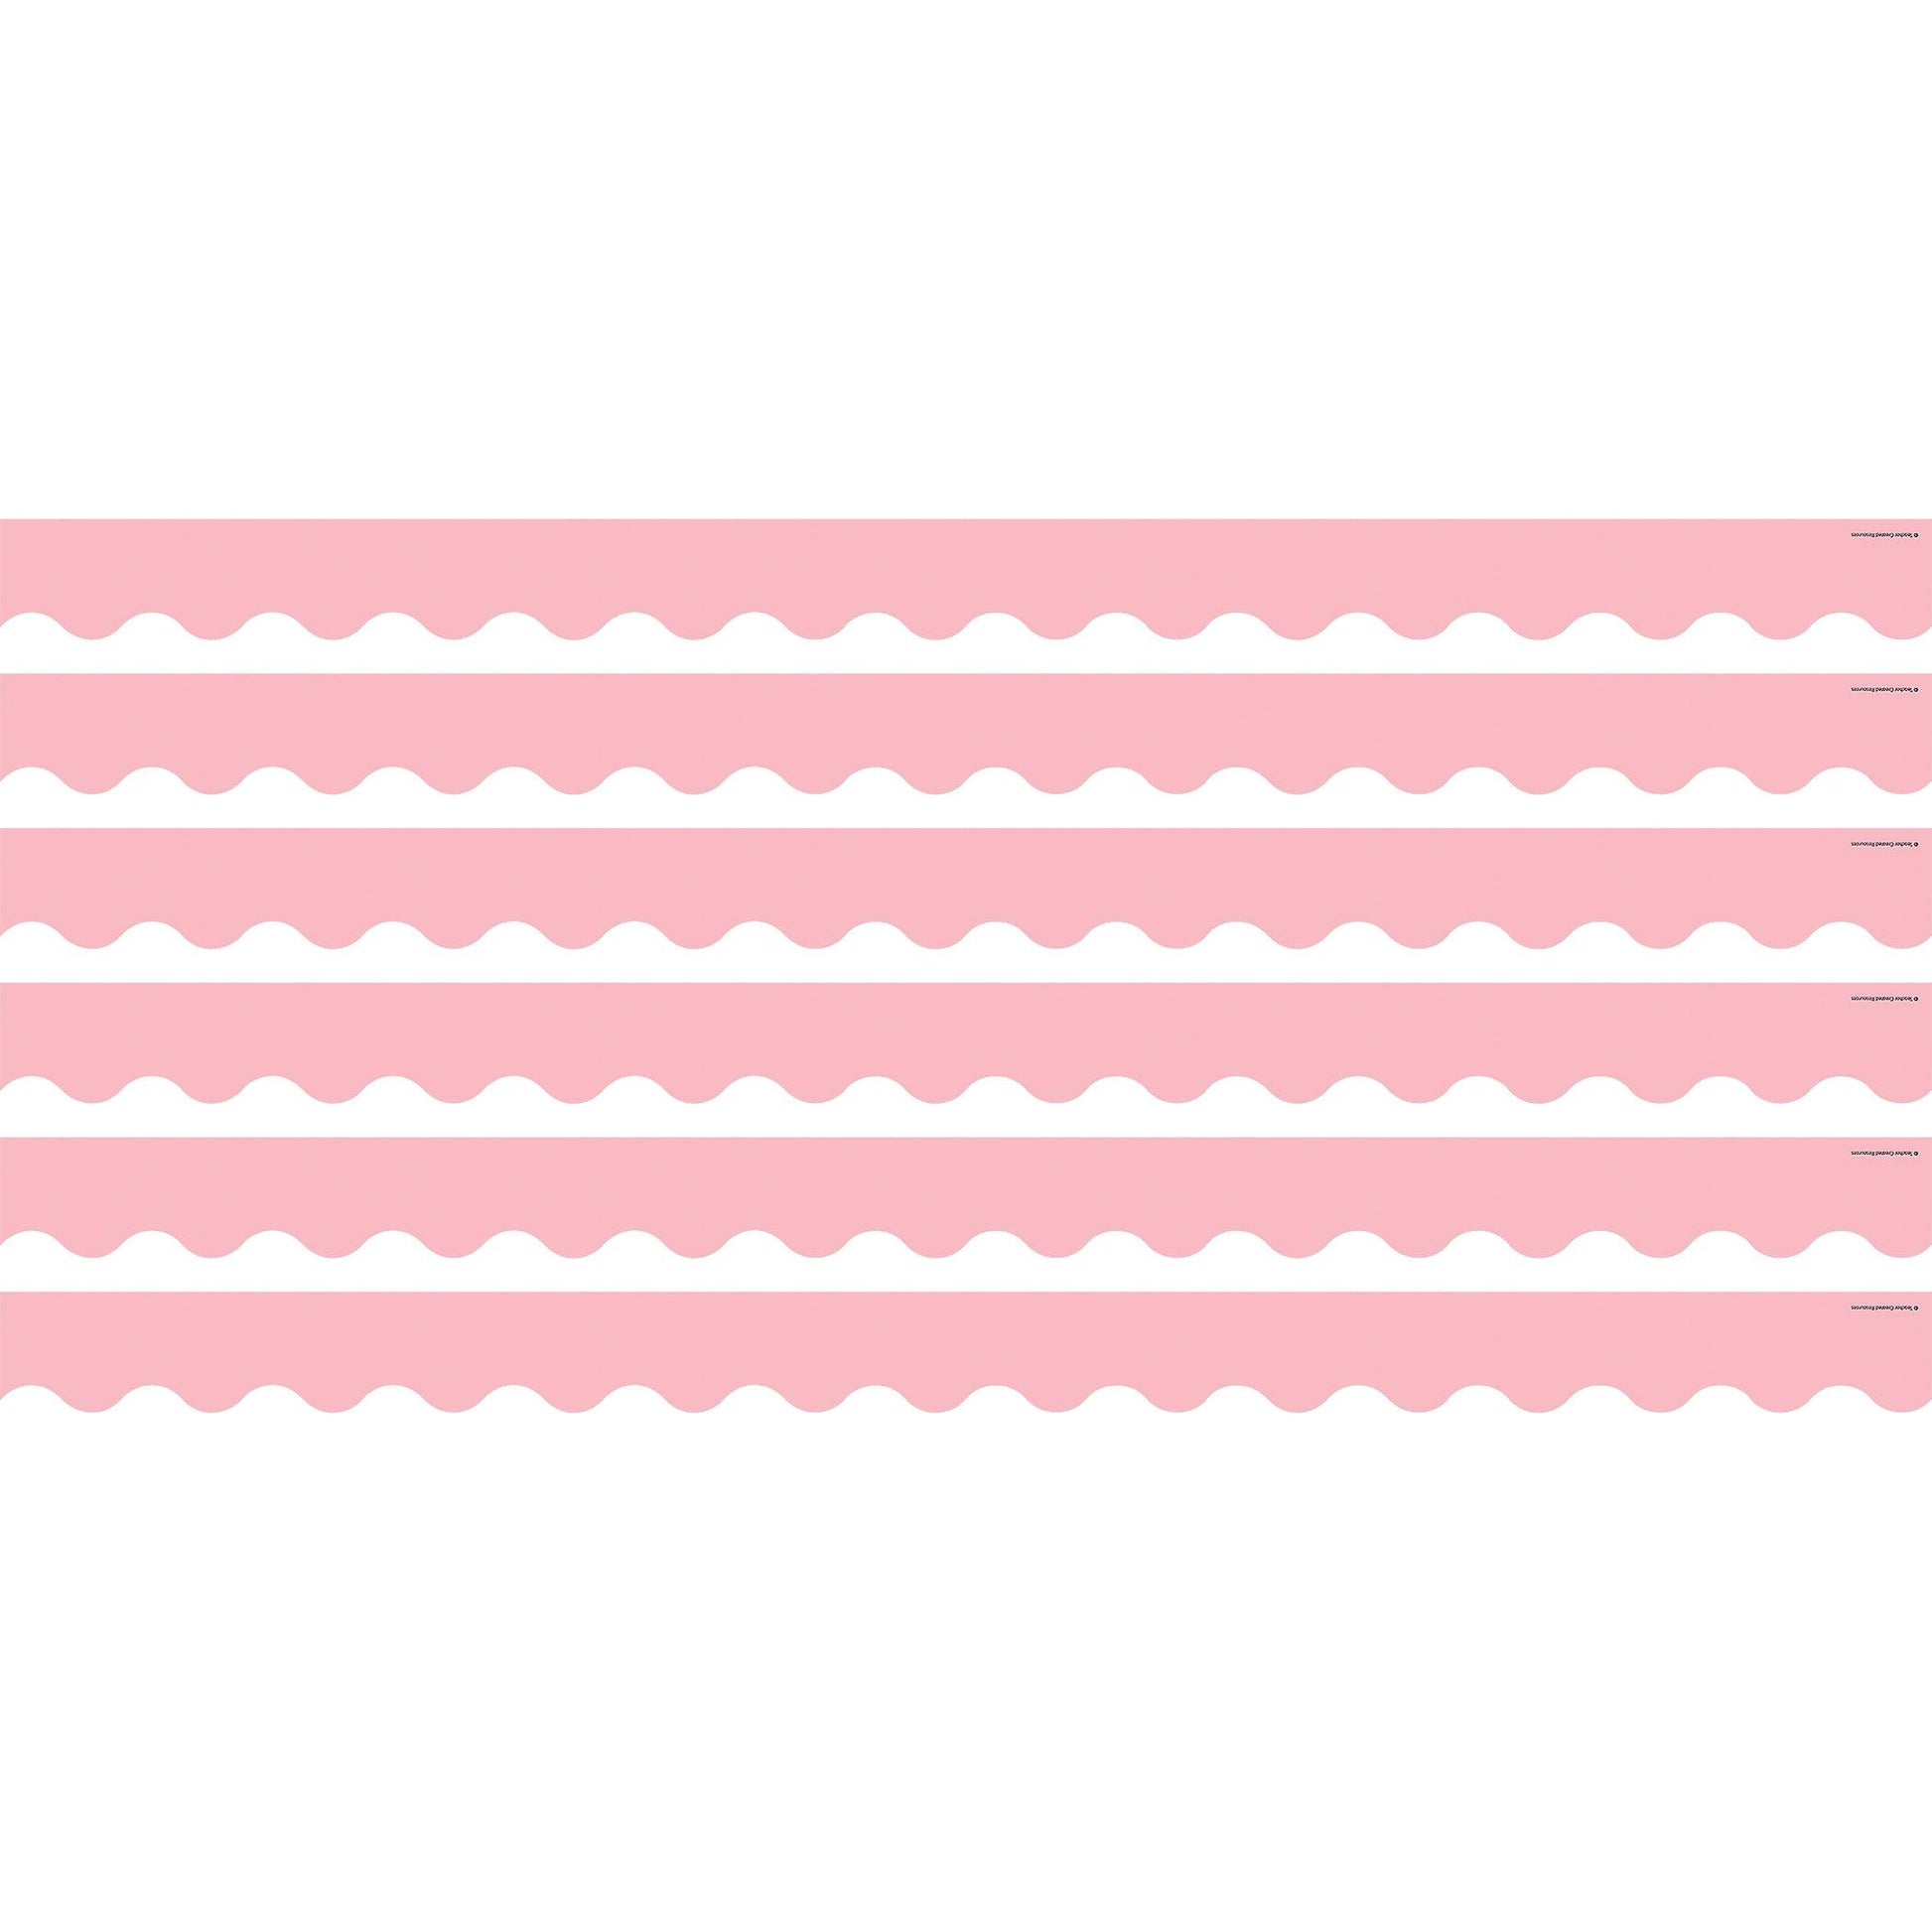 Pastel Pink Scalloped Border Trim, 35 Feet Per Pack, 6 Packs - Loomini